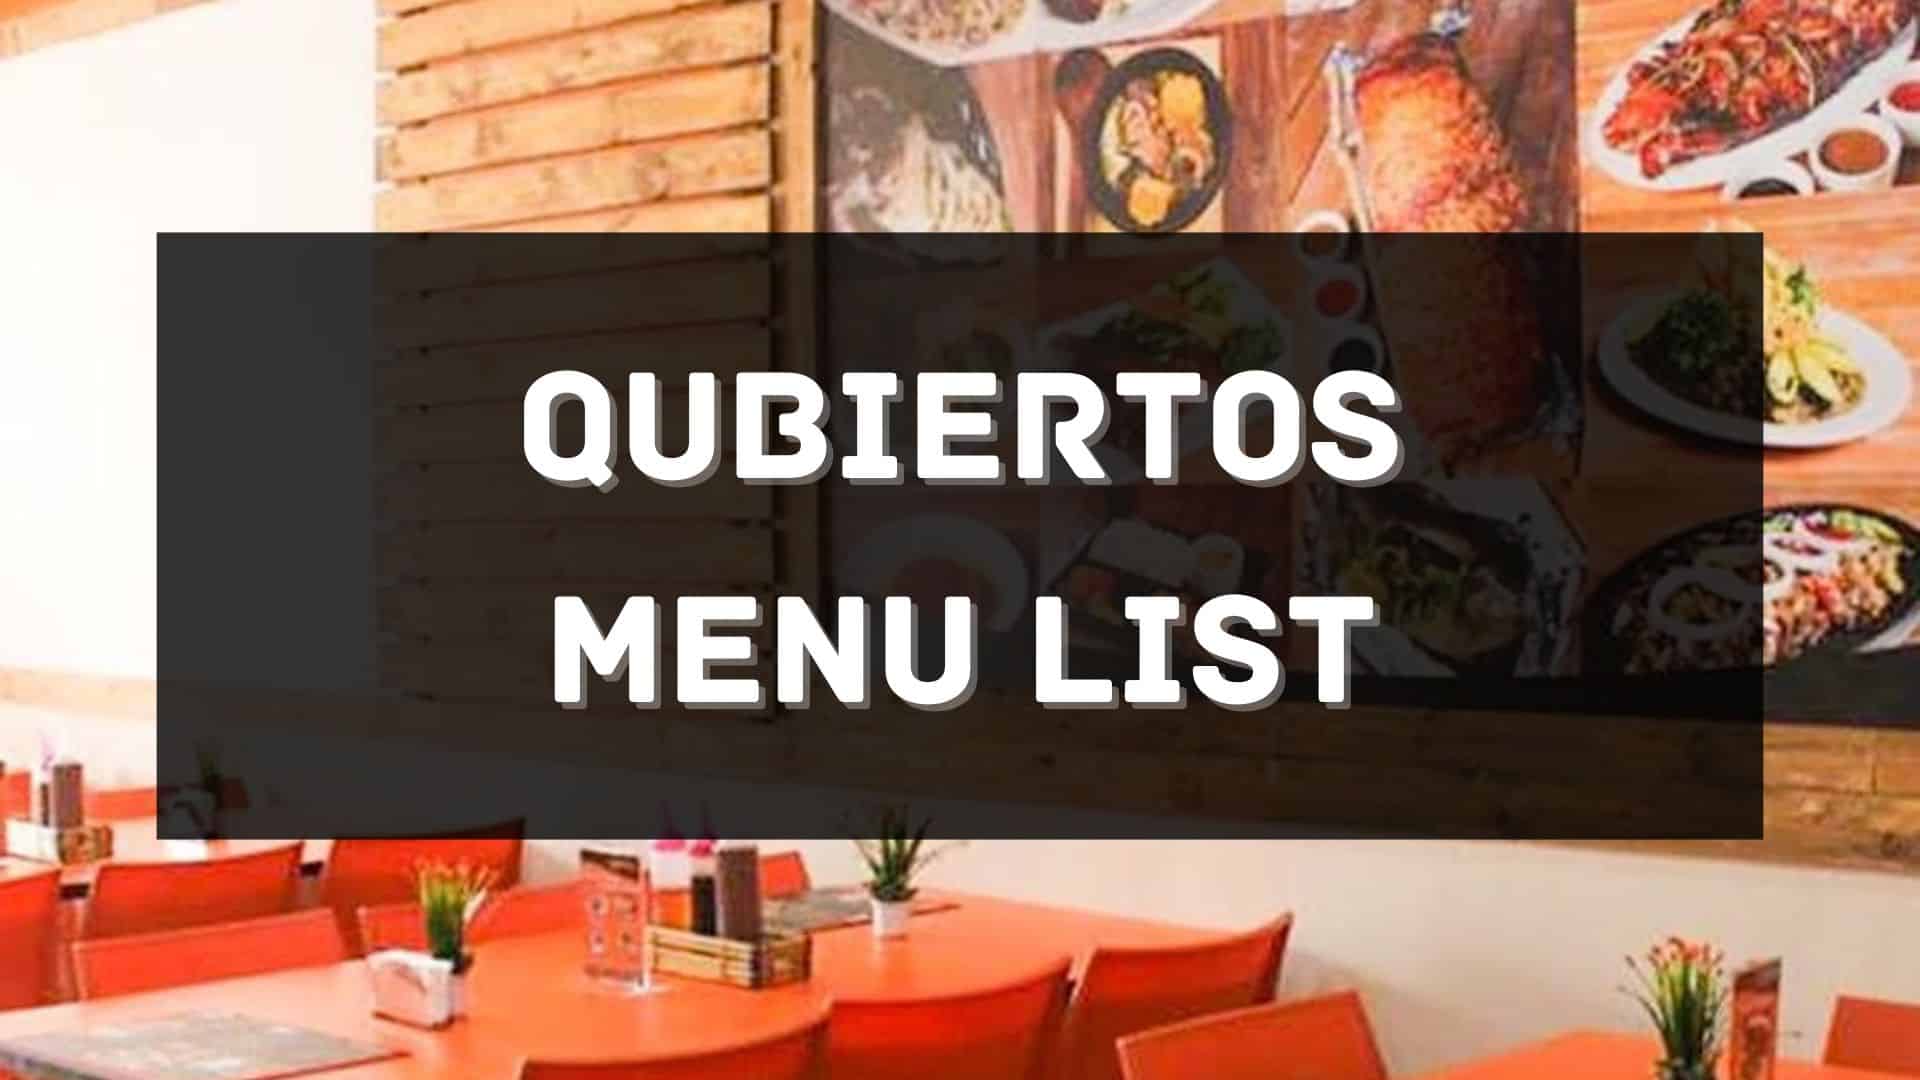 qubiertos menu prices philippines